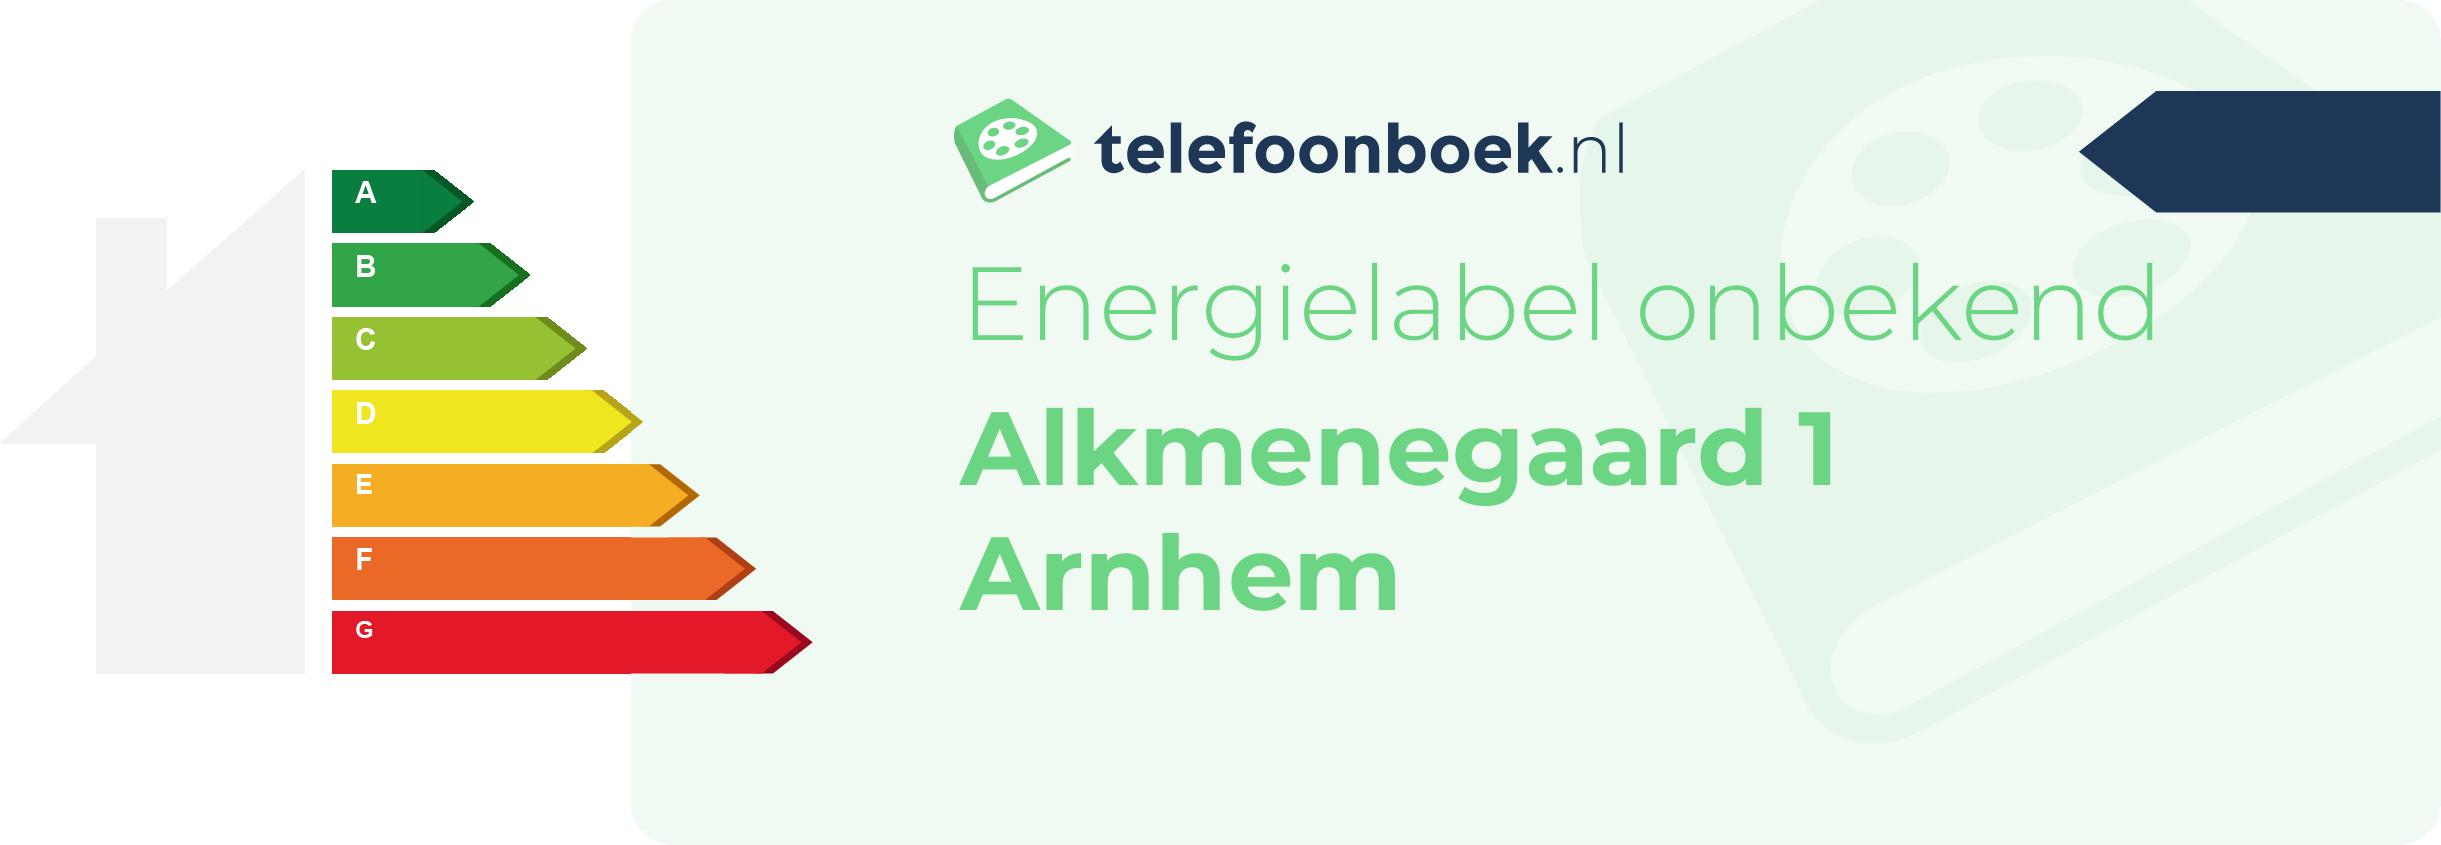 Energielabel Alkmenegaard 1 Arnhem